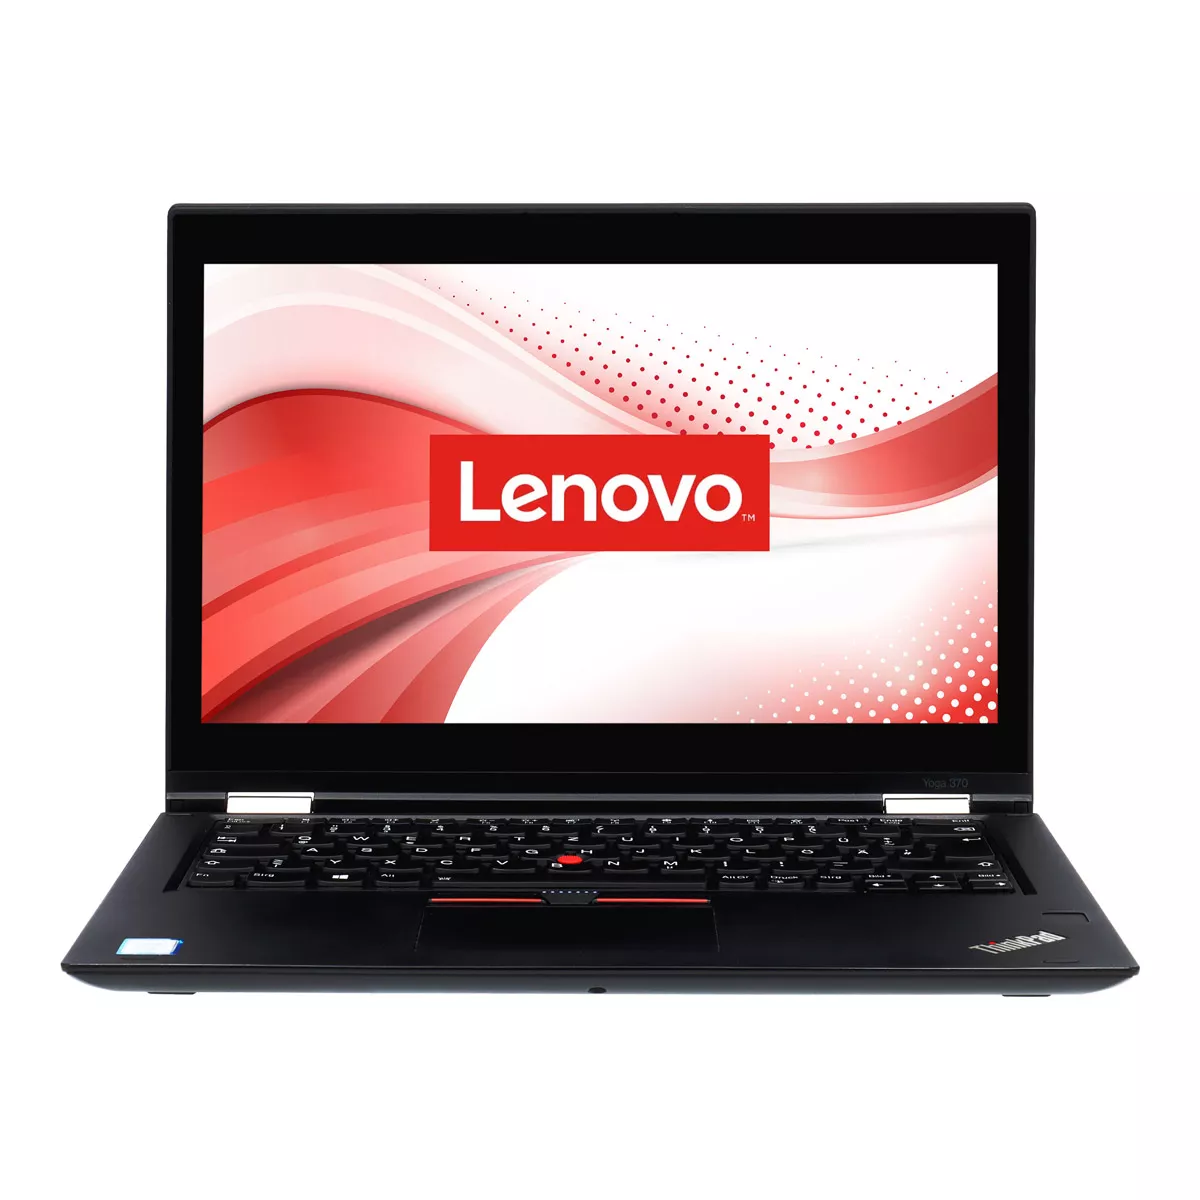 Lenovo ThinkPad X380 Yoga Core i5 8250U 8 GB DDR4 240 GB M.2 SSD Webcam Touch A+